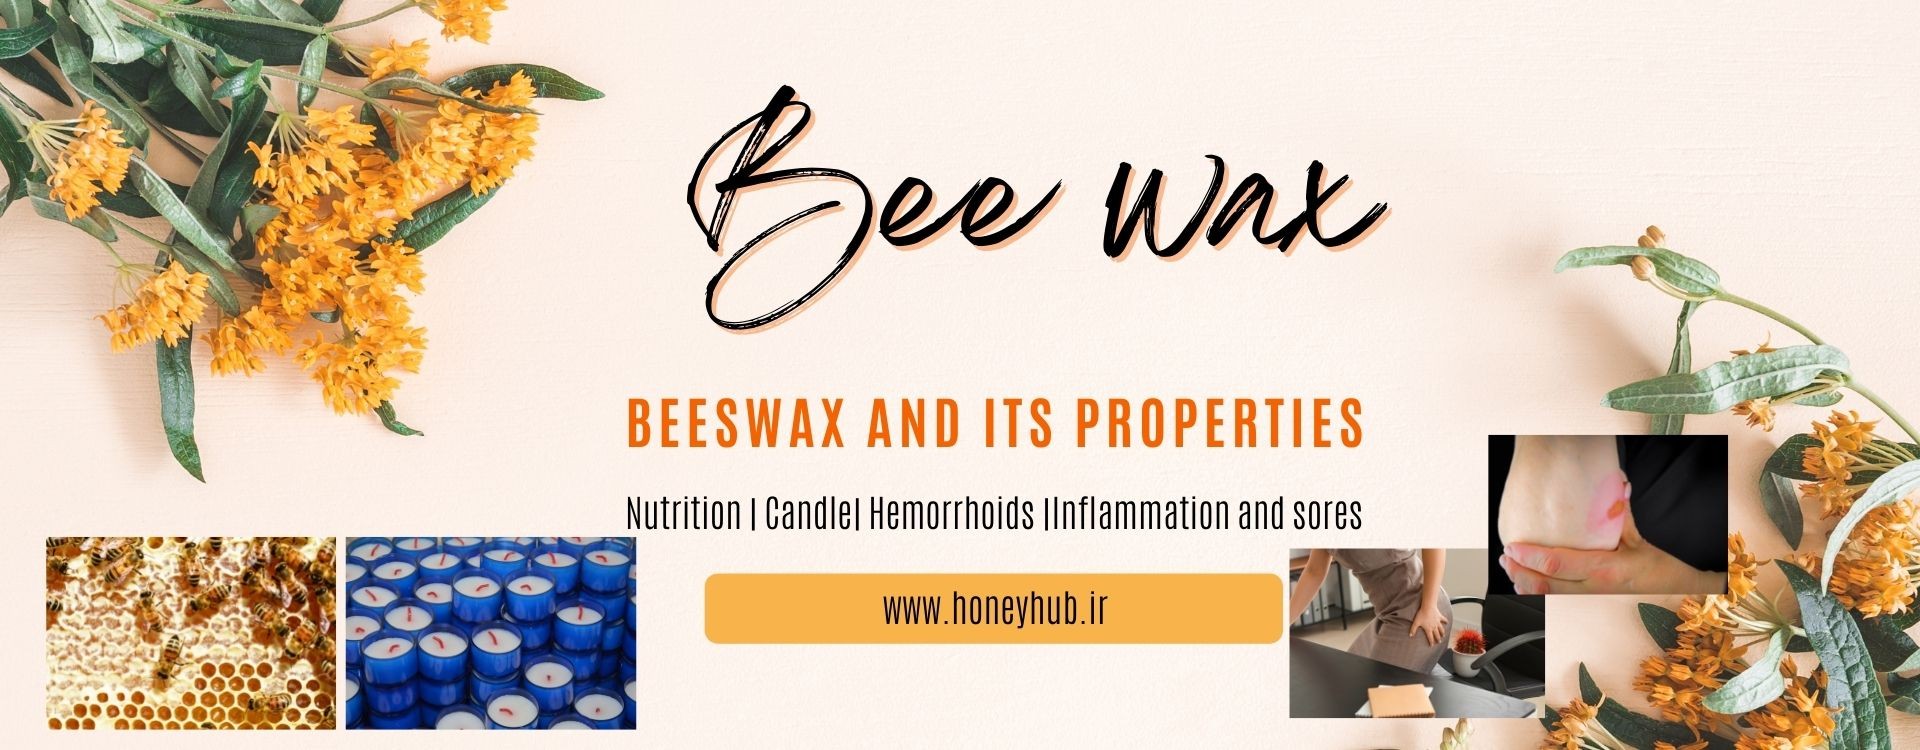 موم زنبور عسل: کاربردها، خواص و مزایا